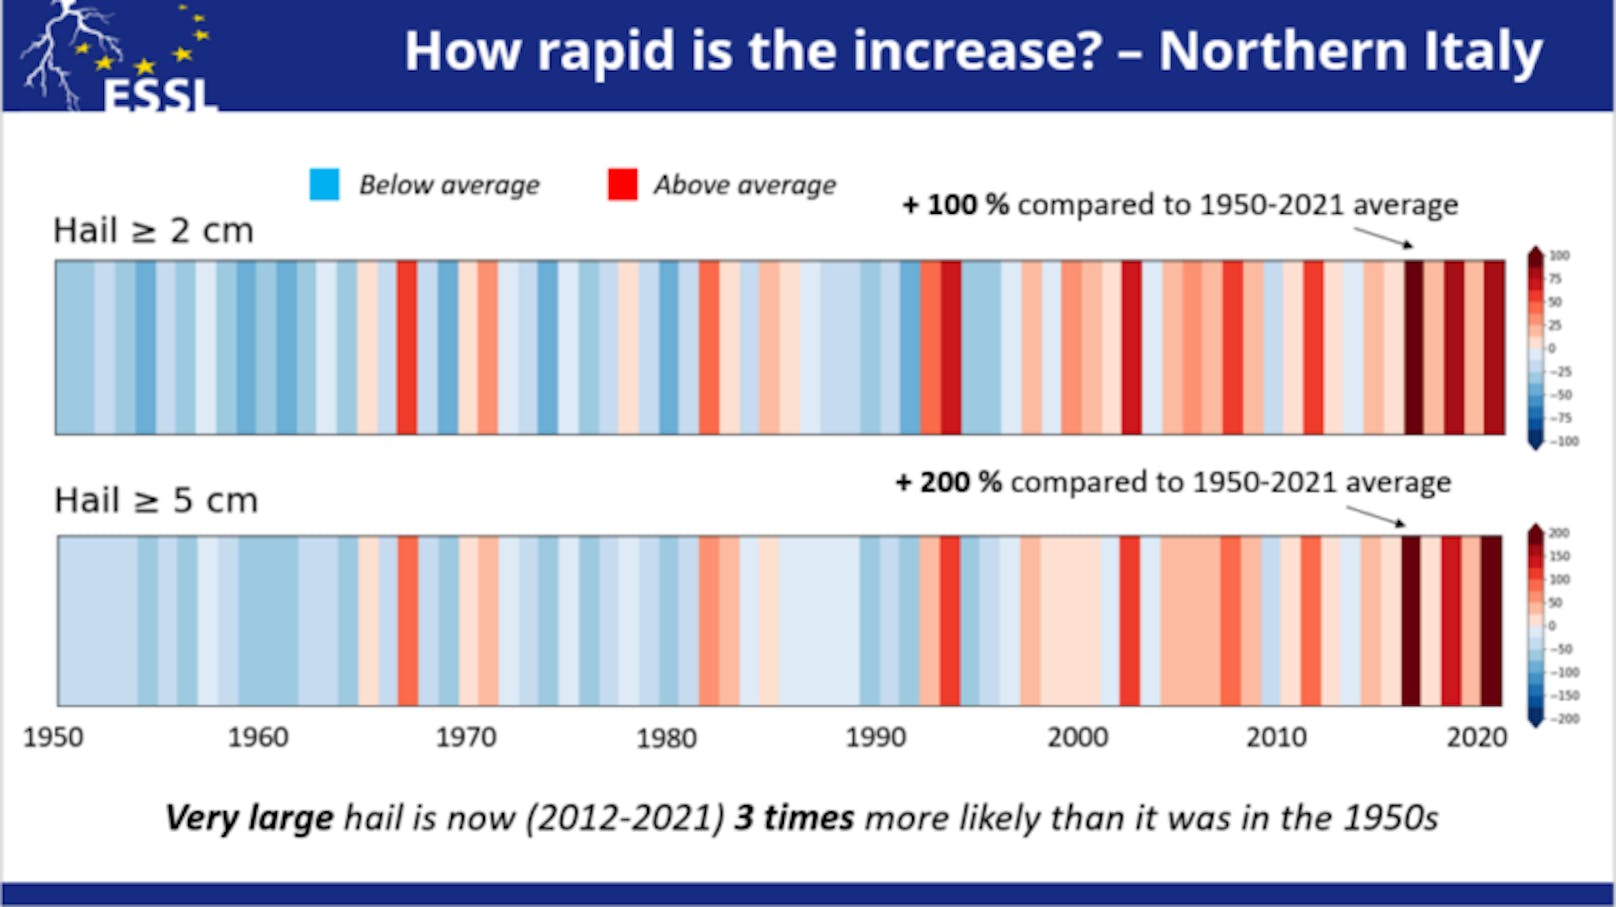 Hagelentwicklung in Norditalien seit 1950. In Rot überdurchschnittliche Ereignisse: "Sehr großer Hagel ist jetzt (2012-2021) drei Mal wahrscheinlicher als in den 1950er Jahren."